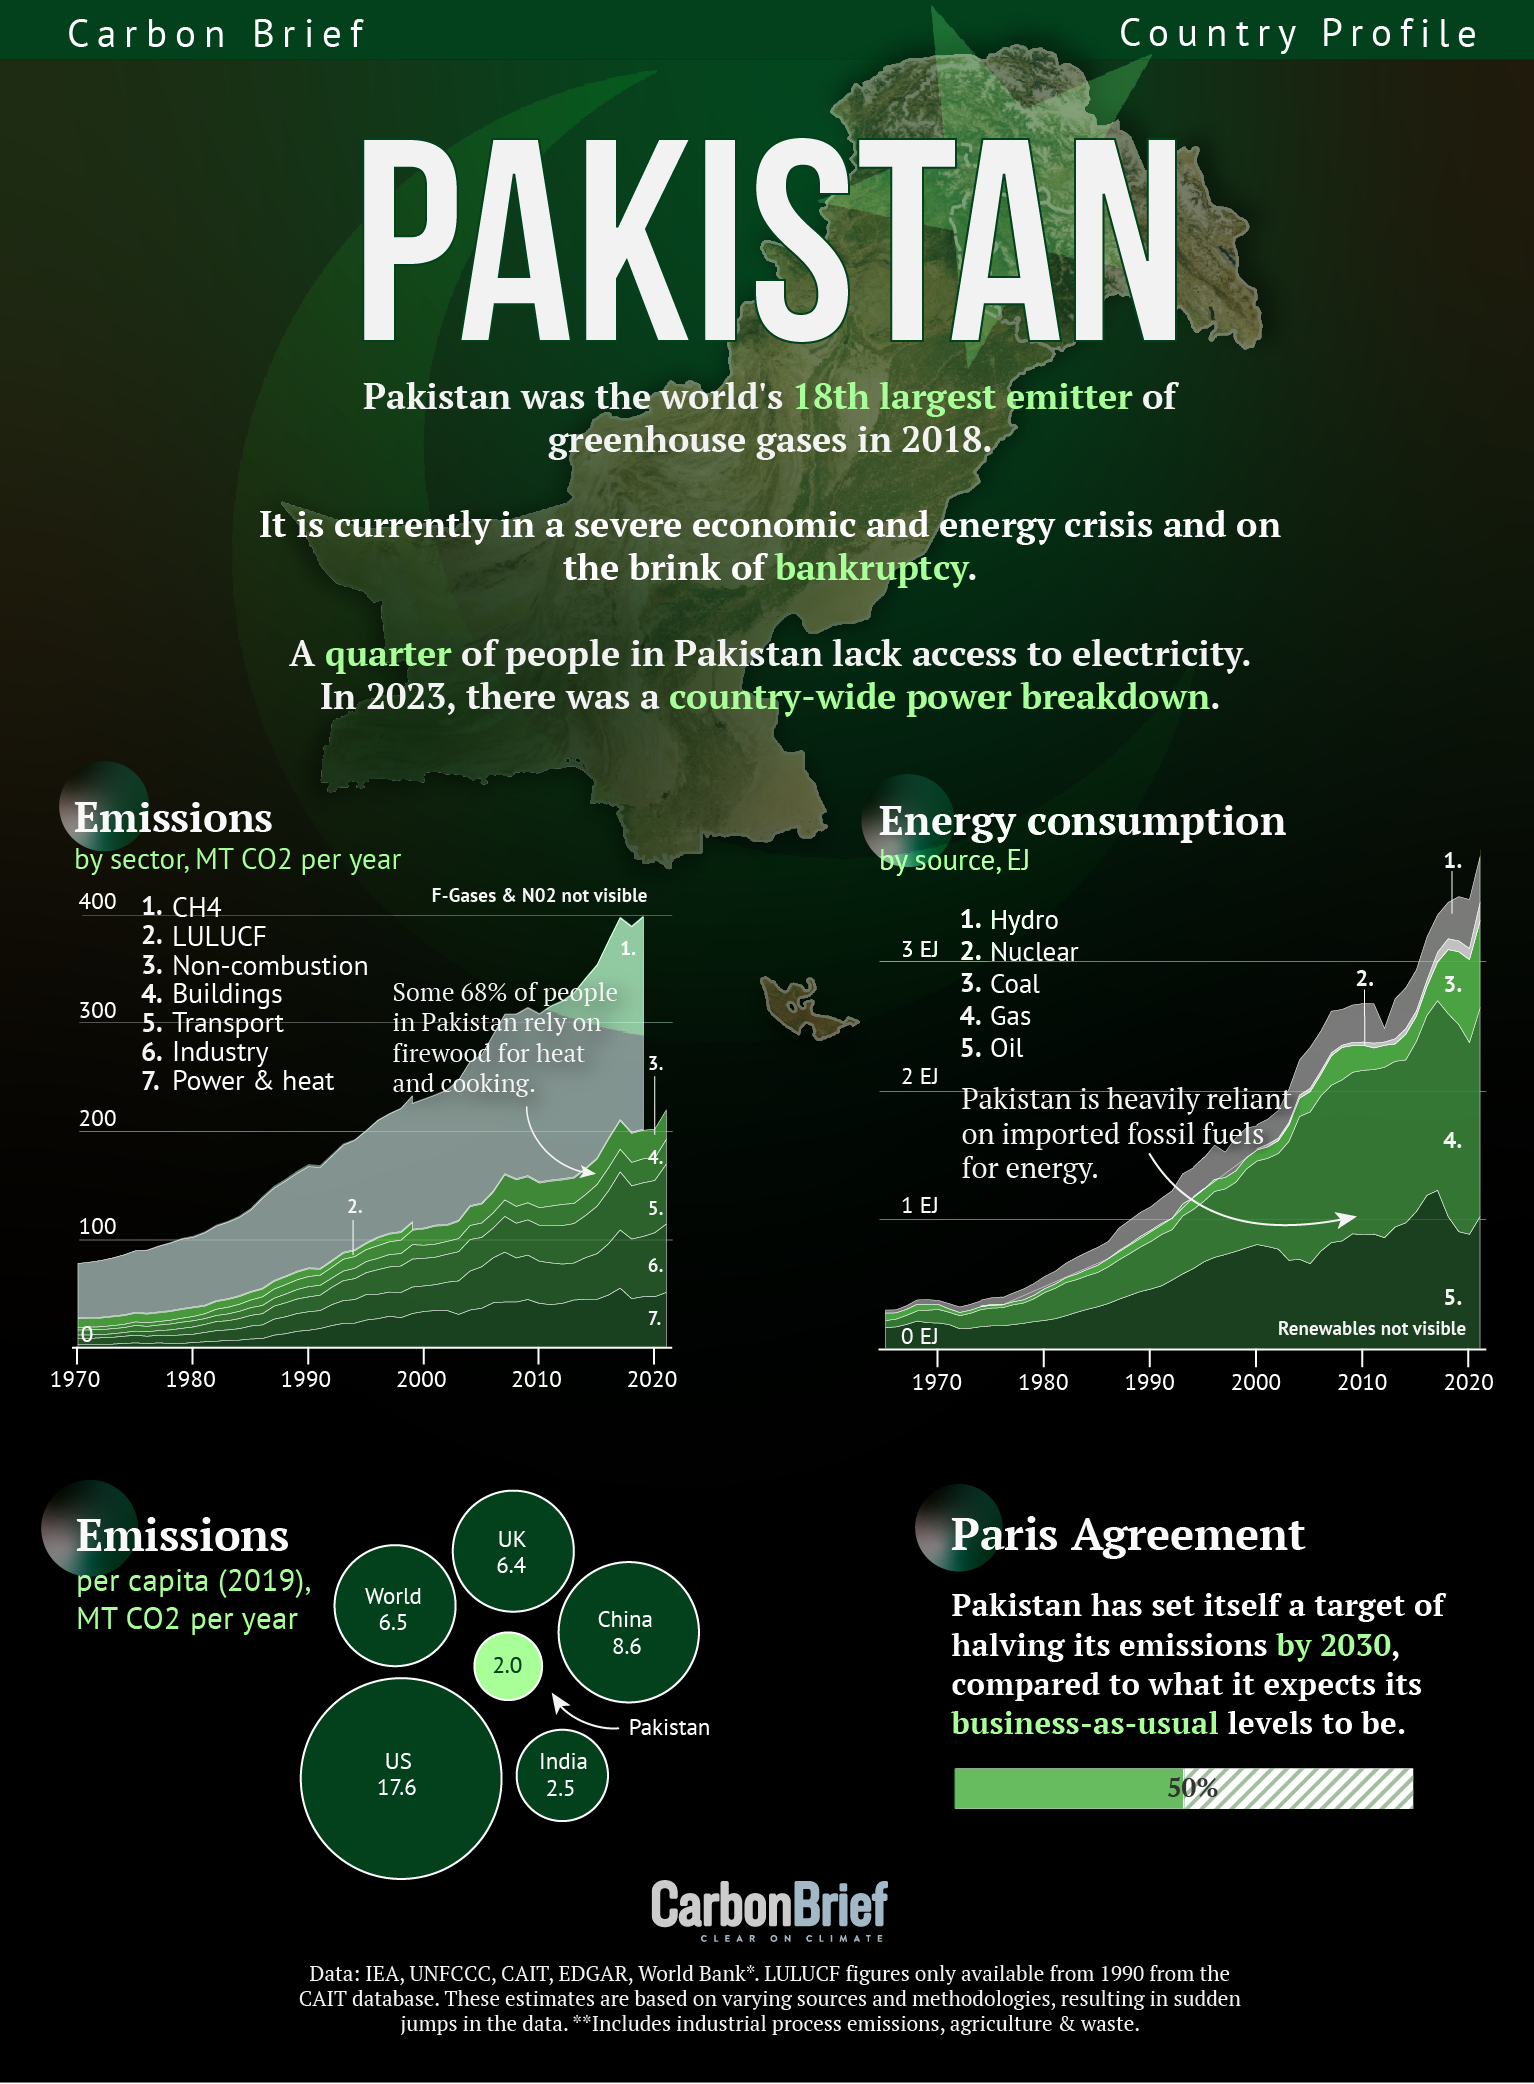 국가 배출량과 에너지 소비량을 보여주는 파키스탄 그래픽.